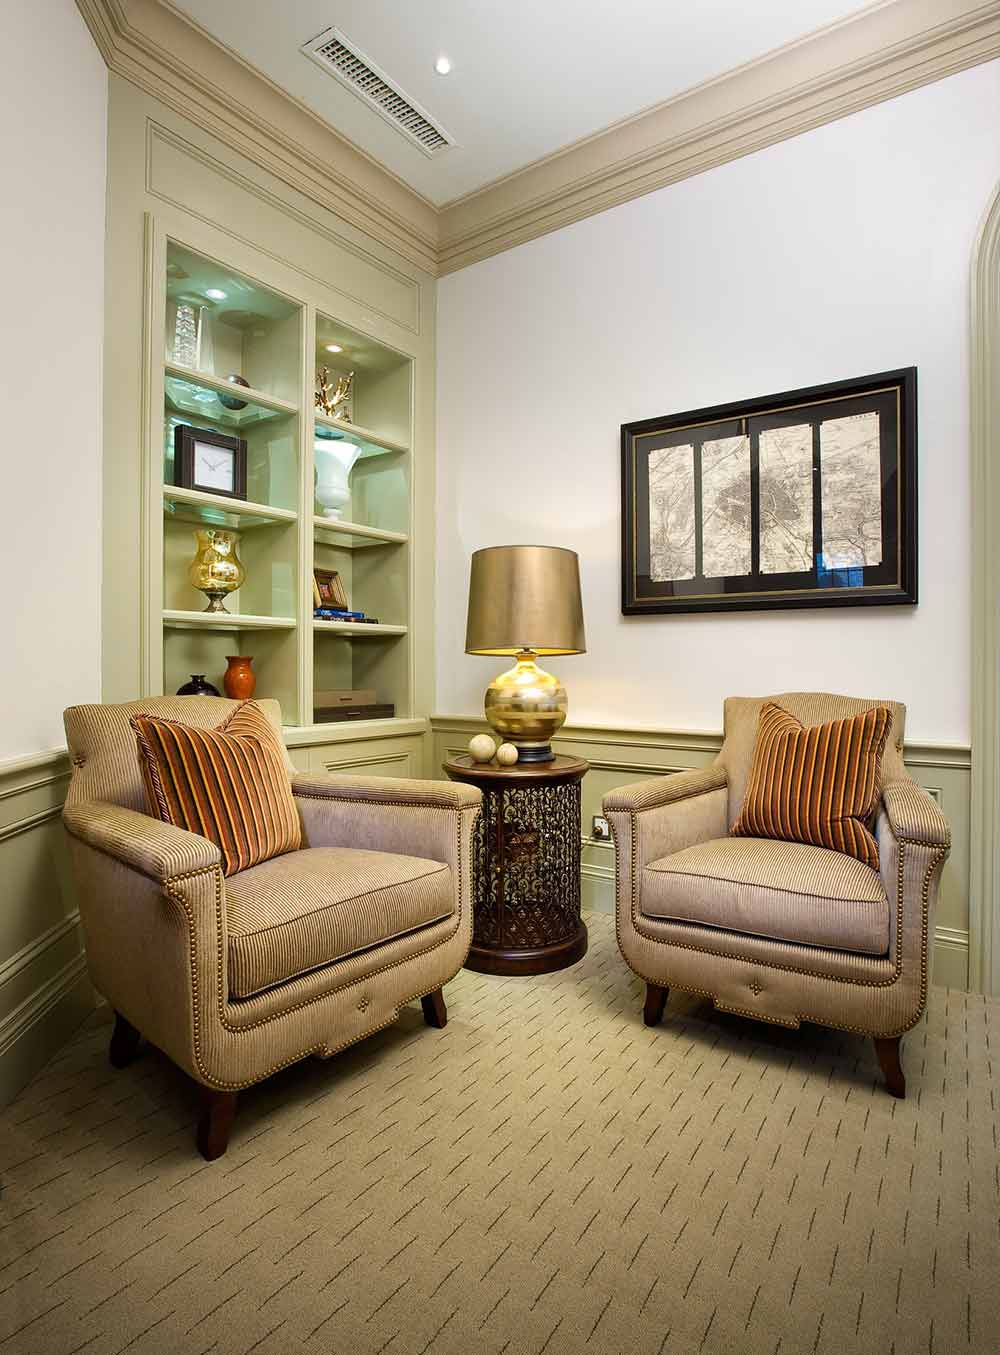 相较客厅而言，这里属于较为私人的角落，所以在布置上设计得更为温馨。米色的地毯和座椅与浅色的环境相互融合，让人倍感放松舒心。